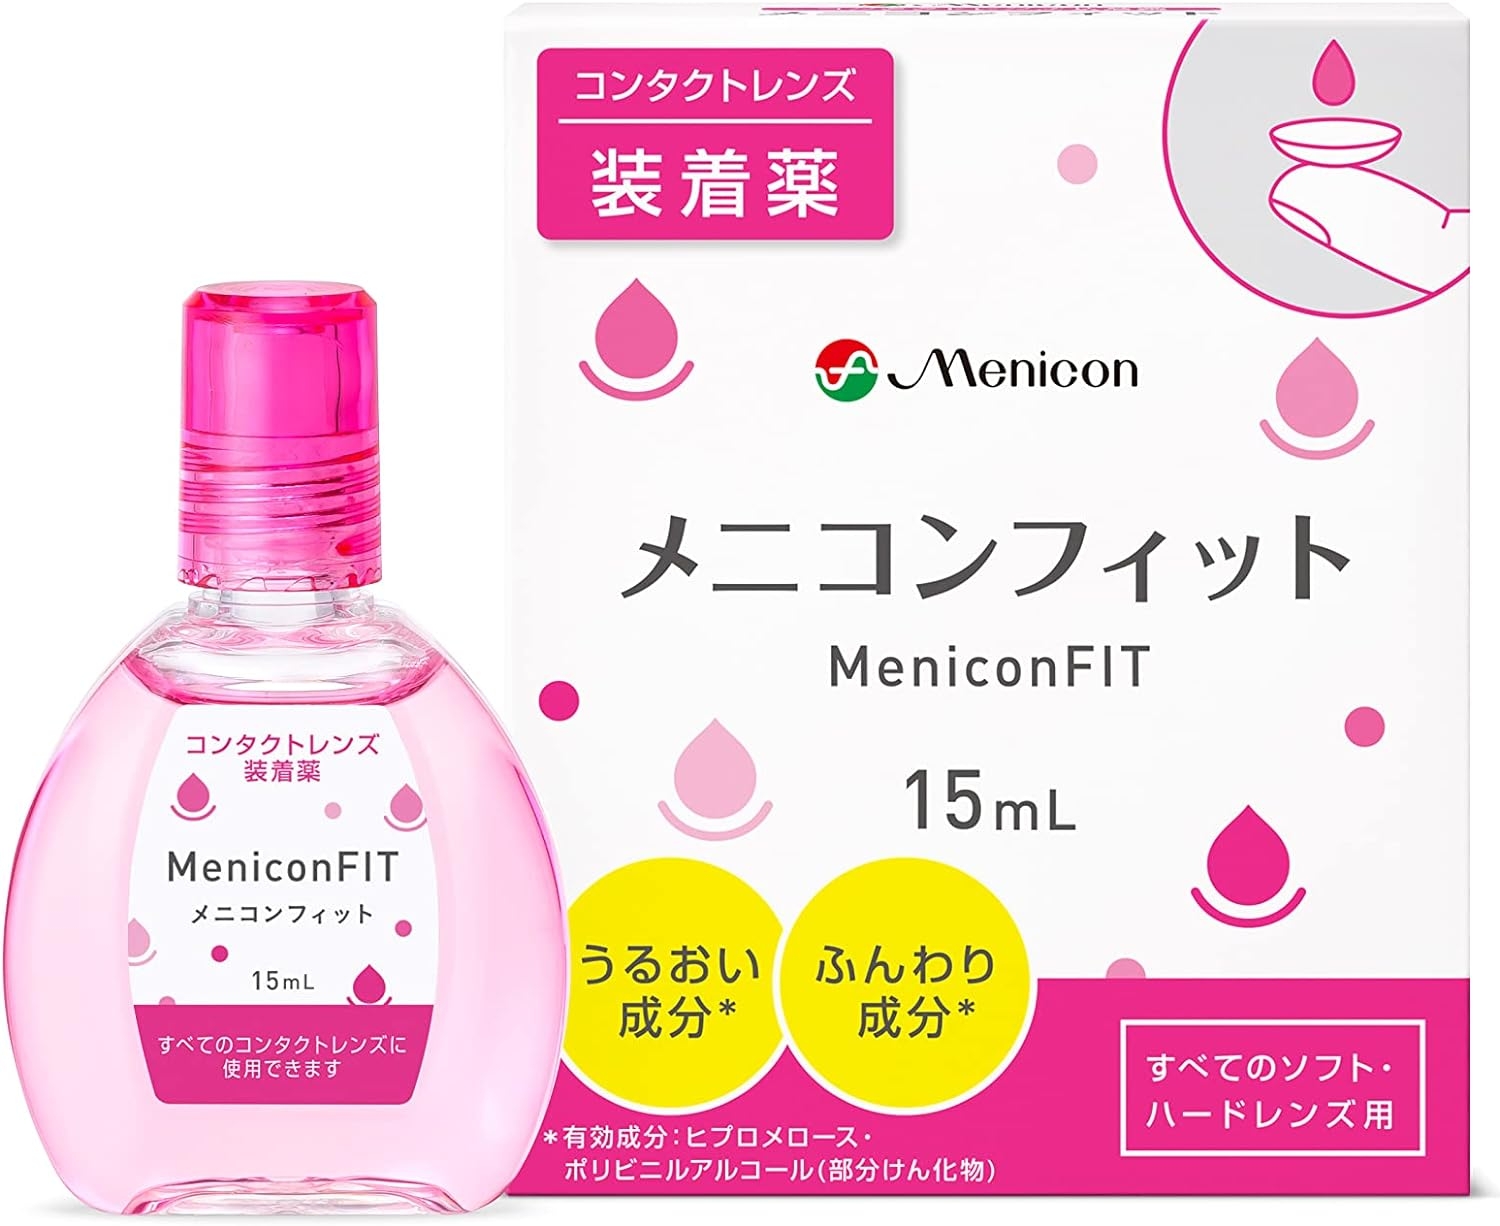 Menicon(メニコン) フィット